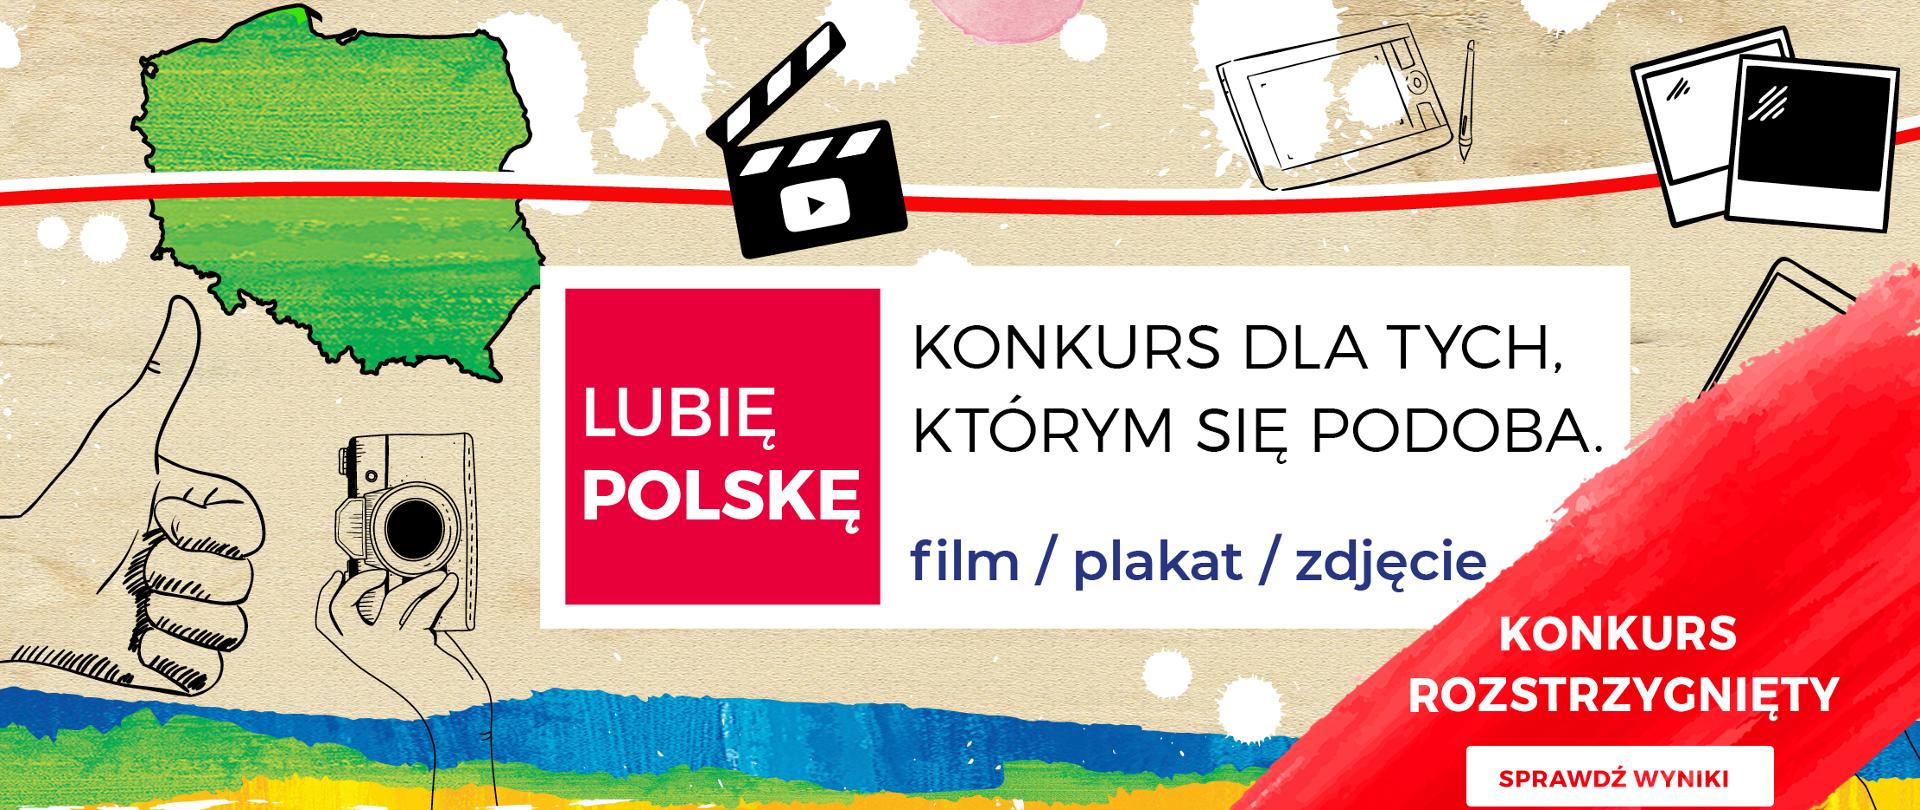 Grafika promująca konkurs, Na środku tekst: Lubię Polskę. Konkurs dla tych, którym się podoba. film/plakat/zdjęcie. Na dole na czerwonym tle informacja: Konkurs rozstrzygnięty. Sprawdź wyniki.